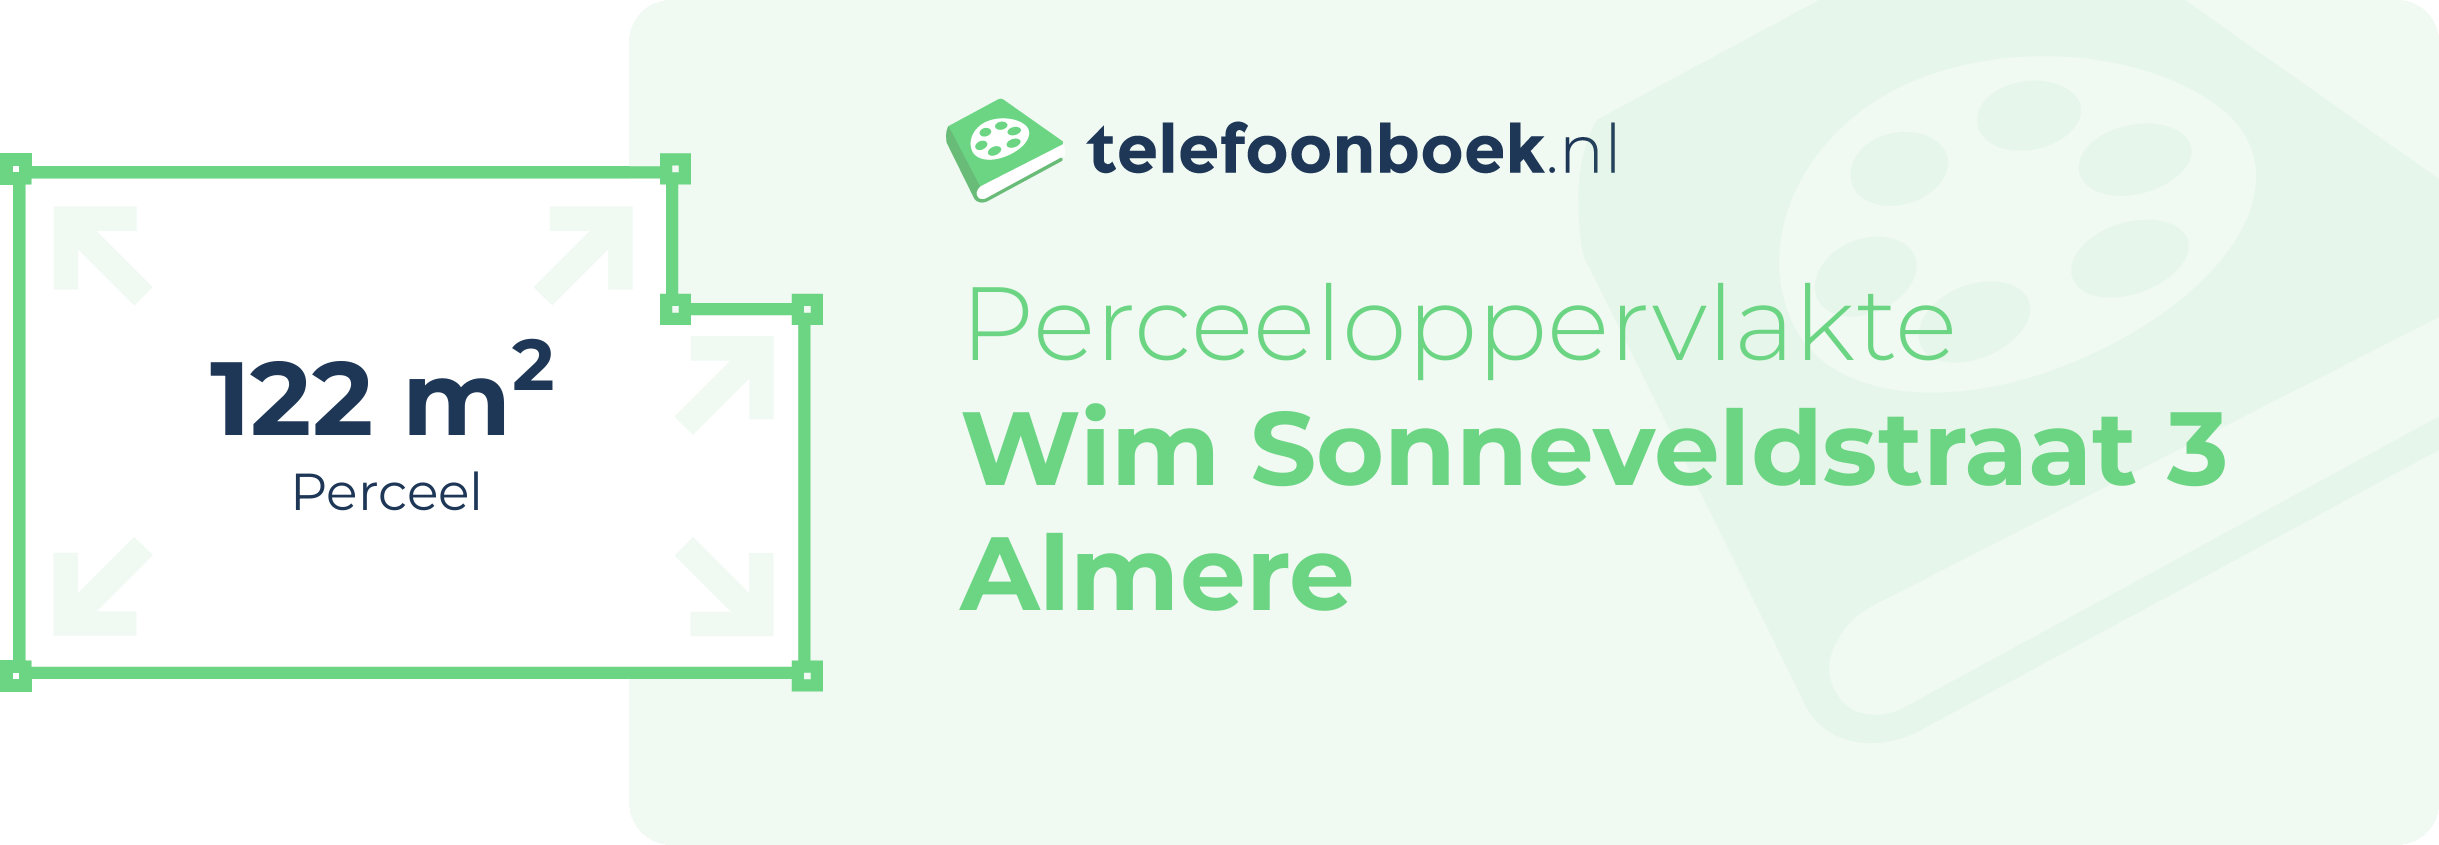 Perceeloppervlakte Wim Sonneveldstraat 3 Almere